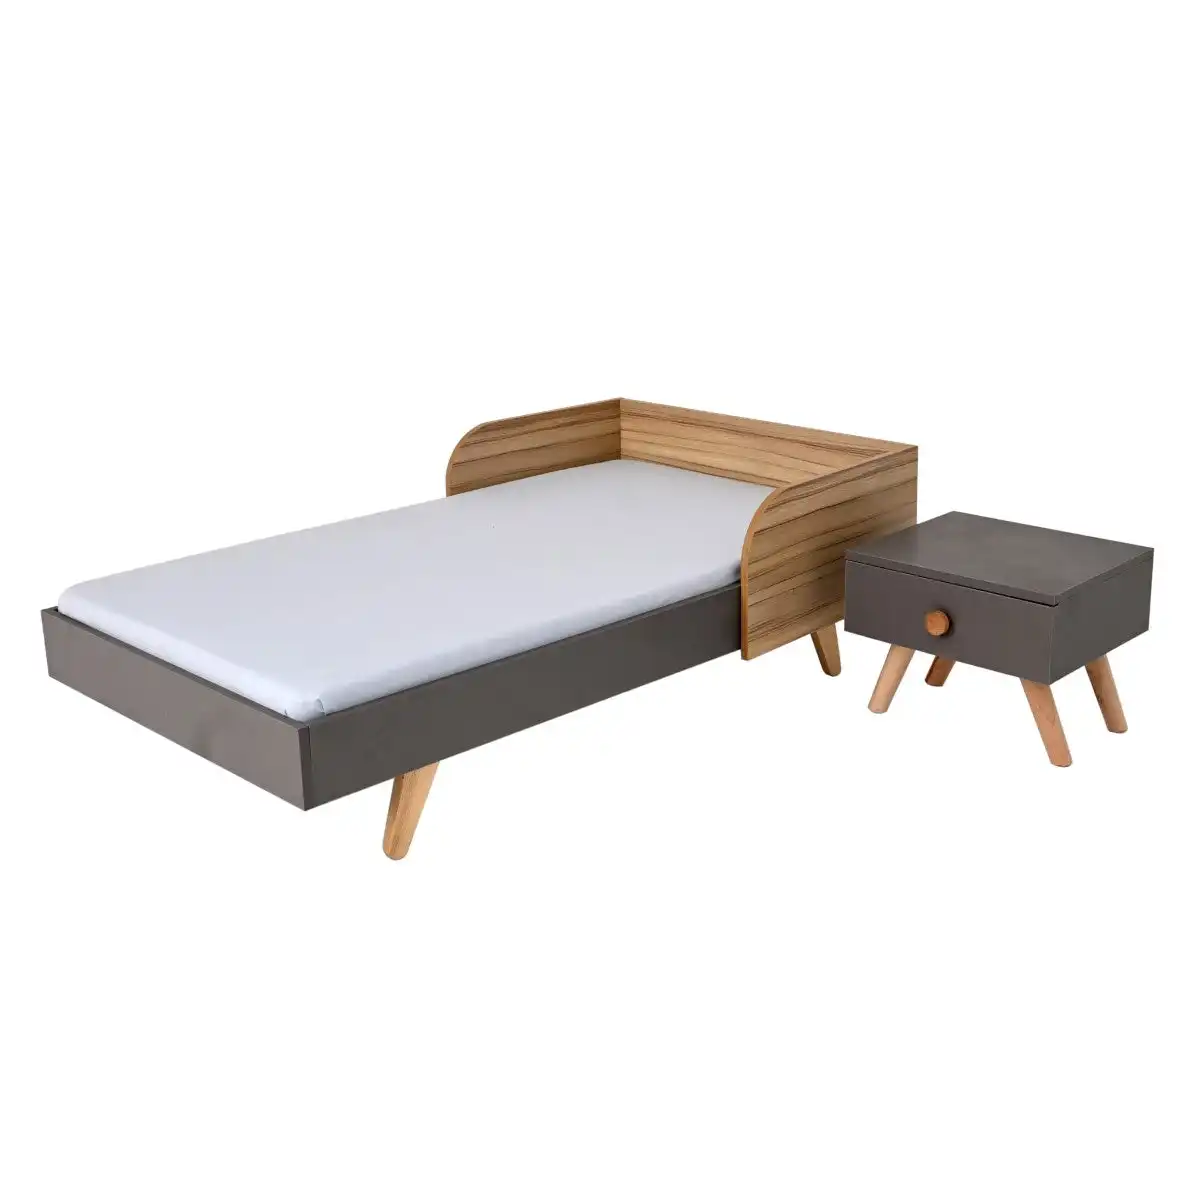 子供用ベッドシングルサイズグレーダブルテクスチャラミネートボード、サイドテーブル付き子供用寝室用家具